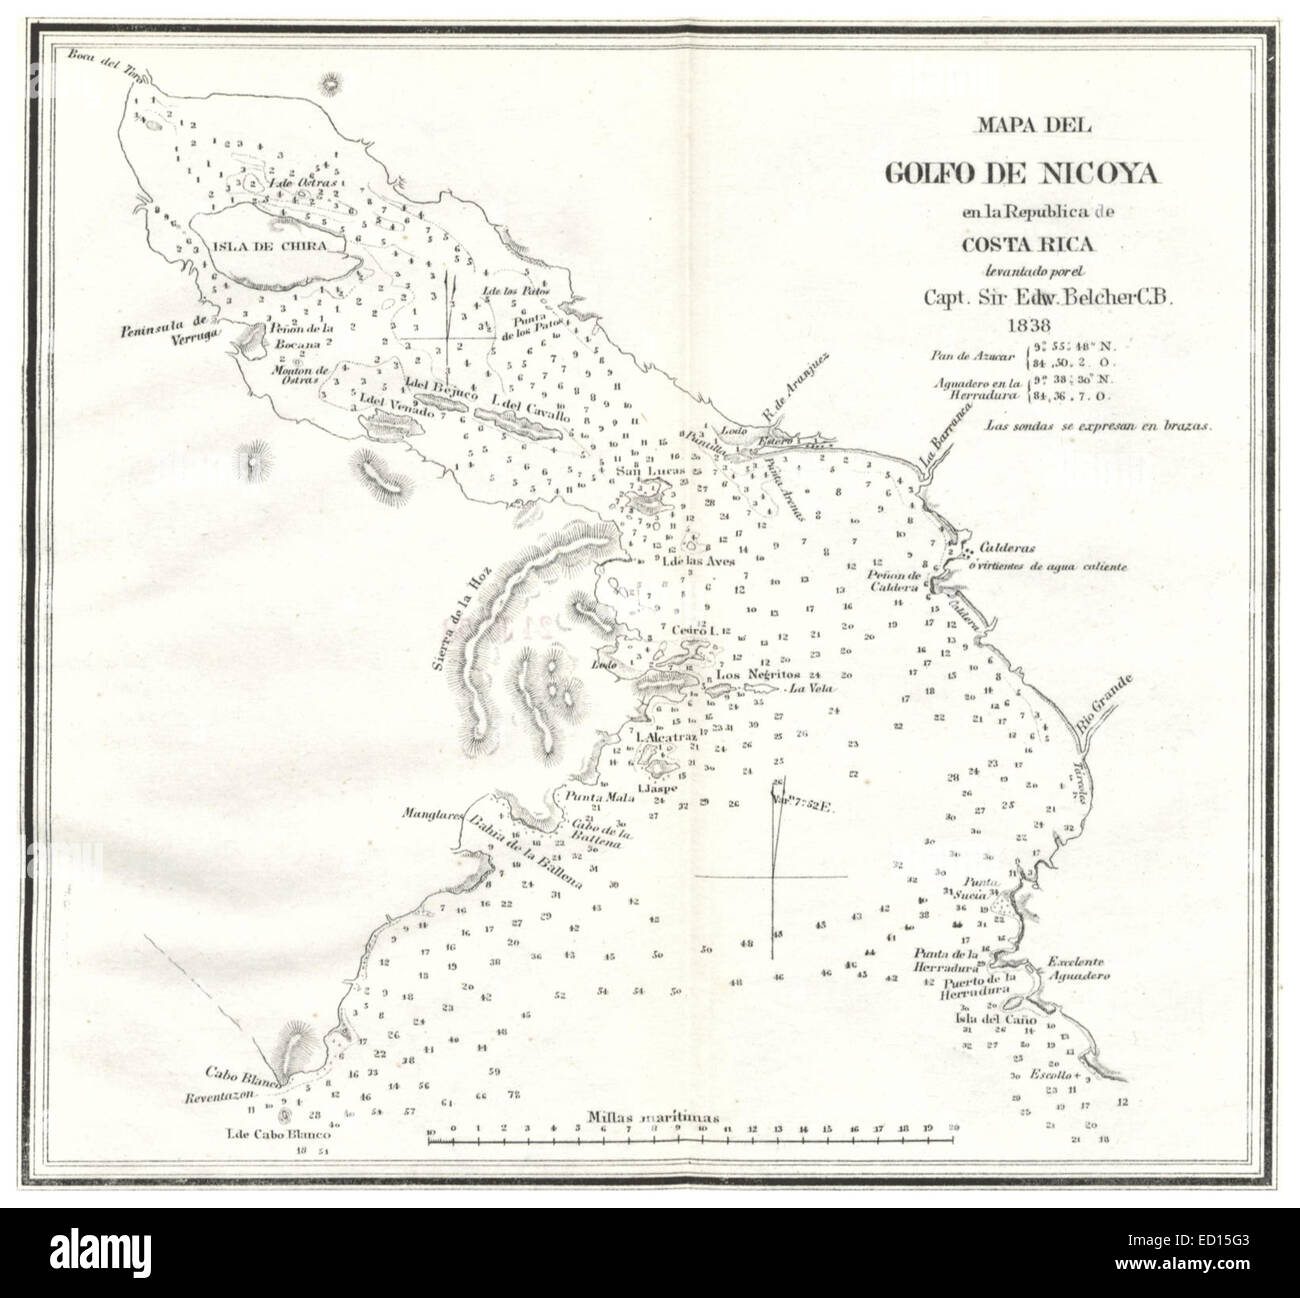 Mapadel Golfo de Nicoya en la República de Costa Rica (1838) Foto Stock